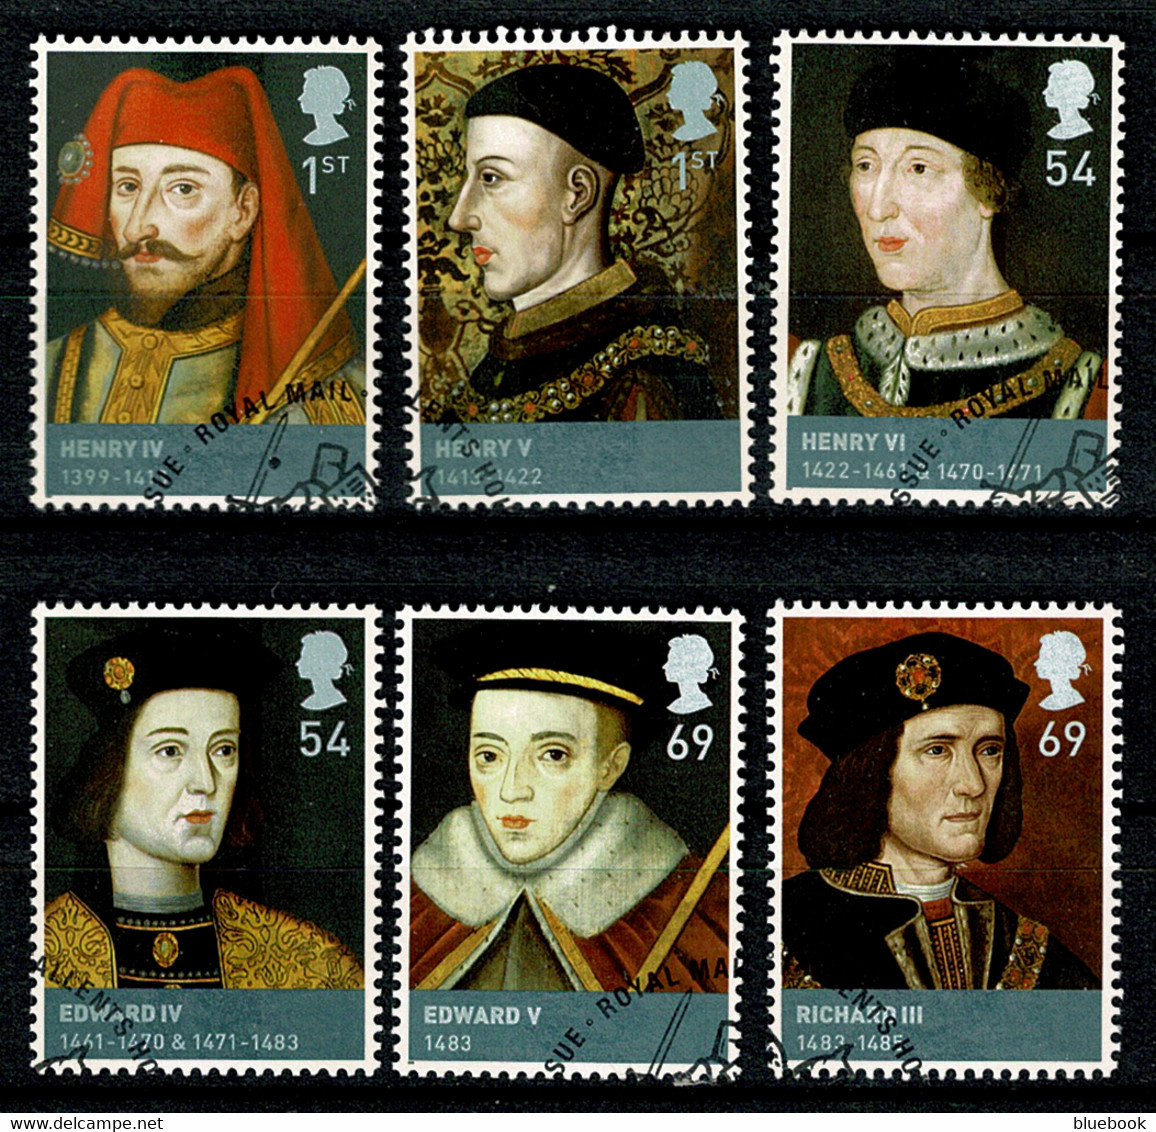 Ref 1568 - GB 2008 - Kings & Queens  - SG 2812/2817 Used Set Of 6 Stamps - Gebruikt